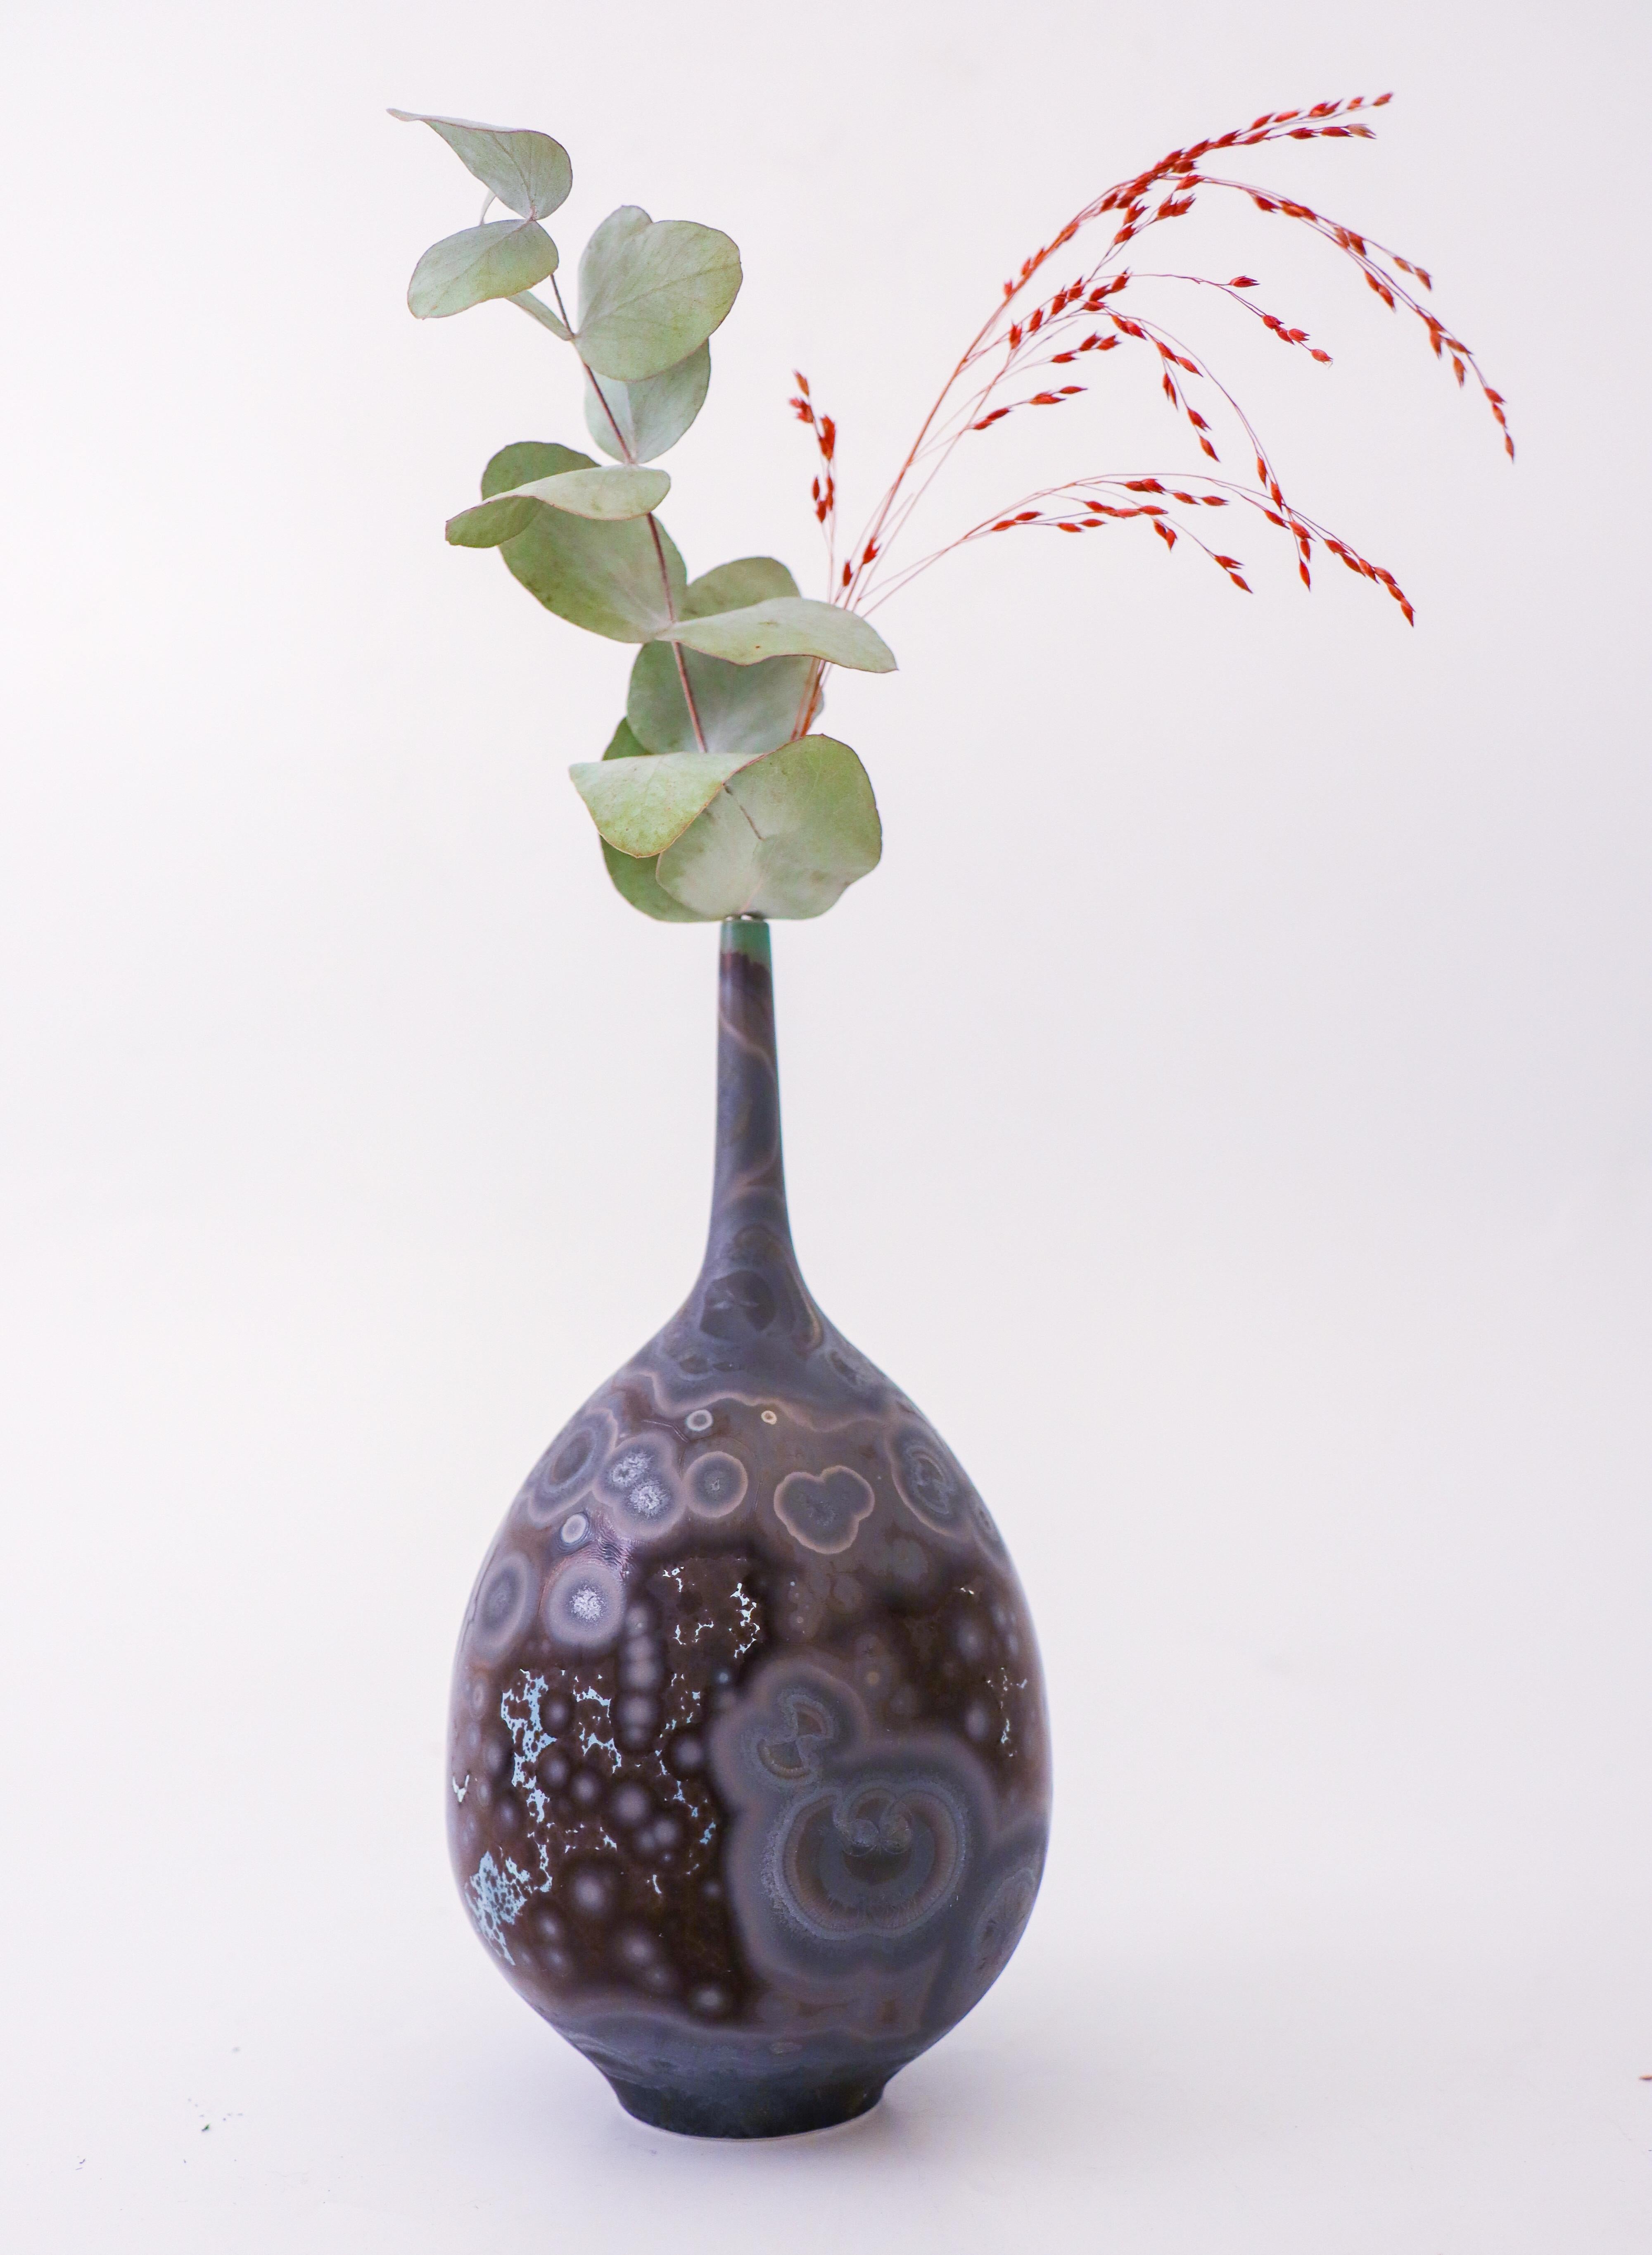 Glazed Isak Isaksson Purple & Brown Ceramic Vase Crystalline Glaze Contemporary Artist